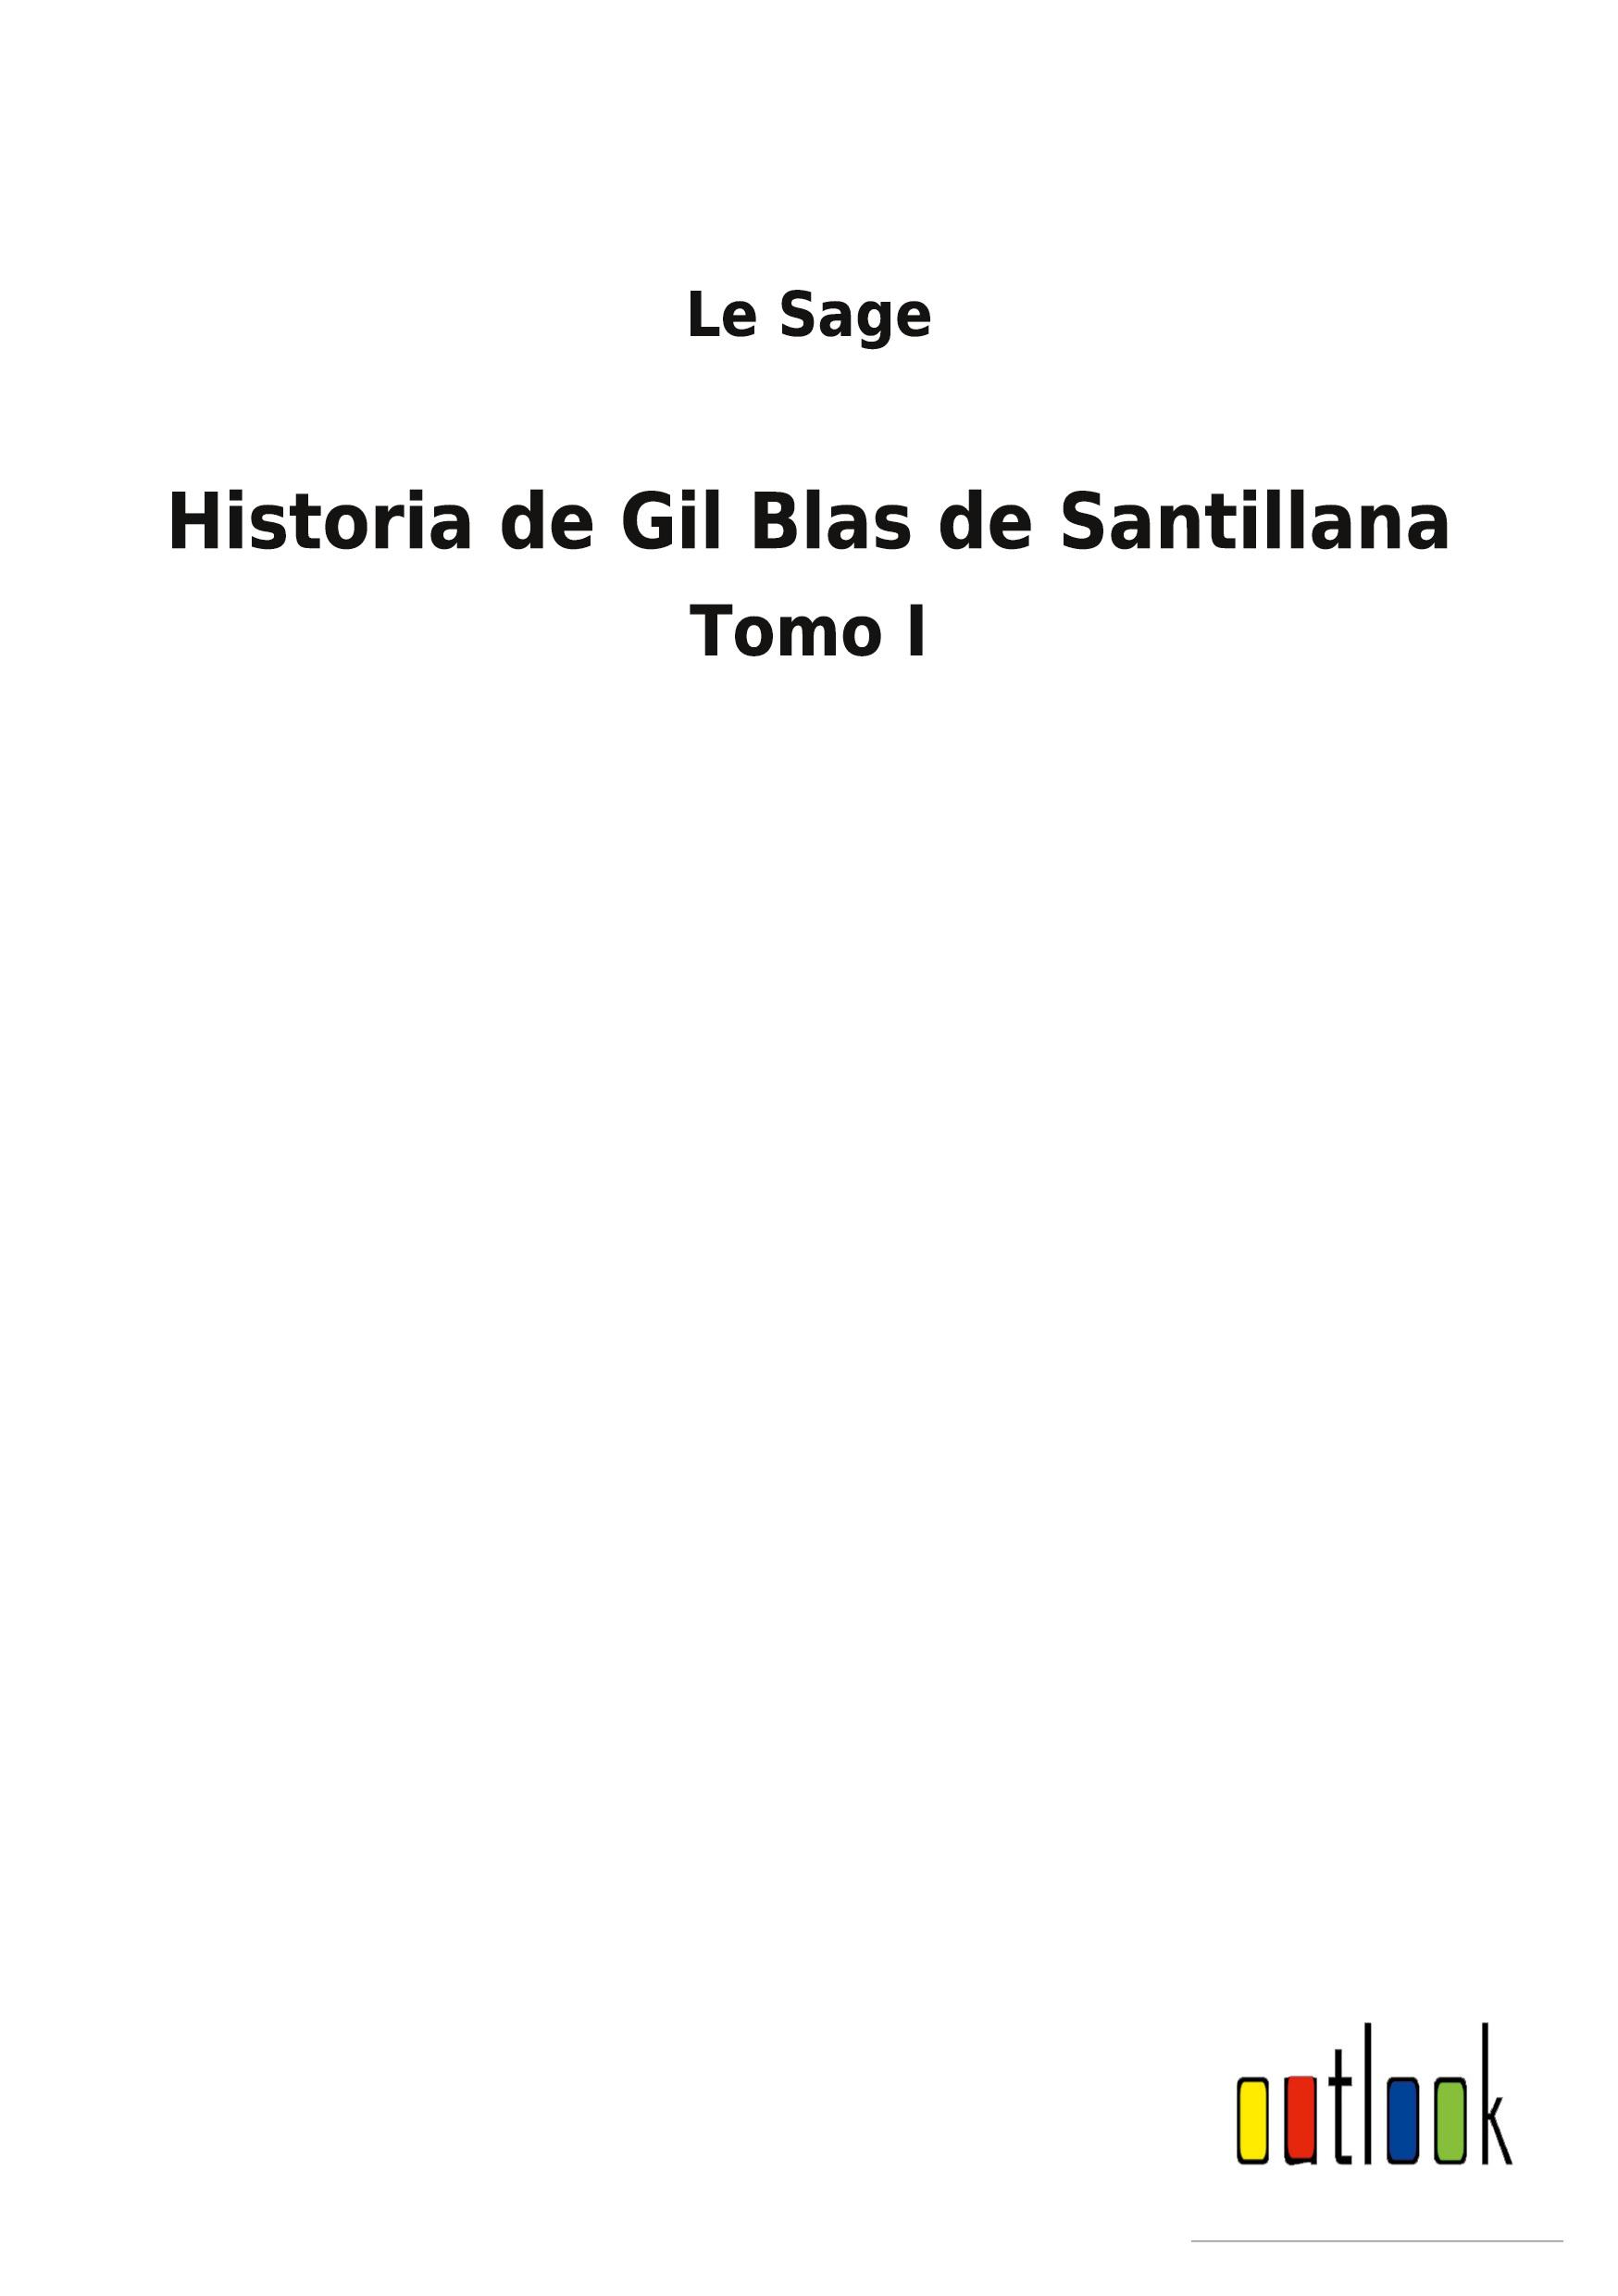 Historia de Gil Blas de Santillana - Sage, Le